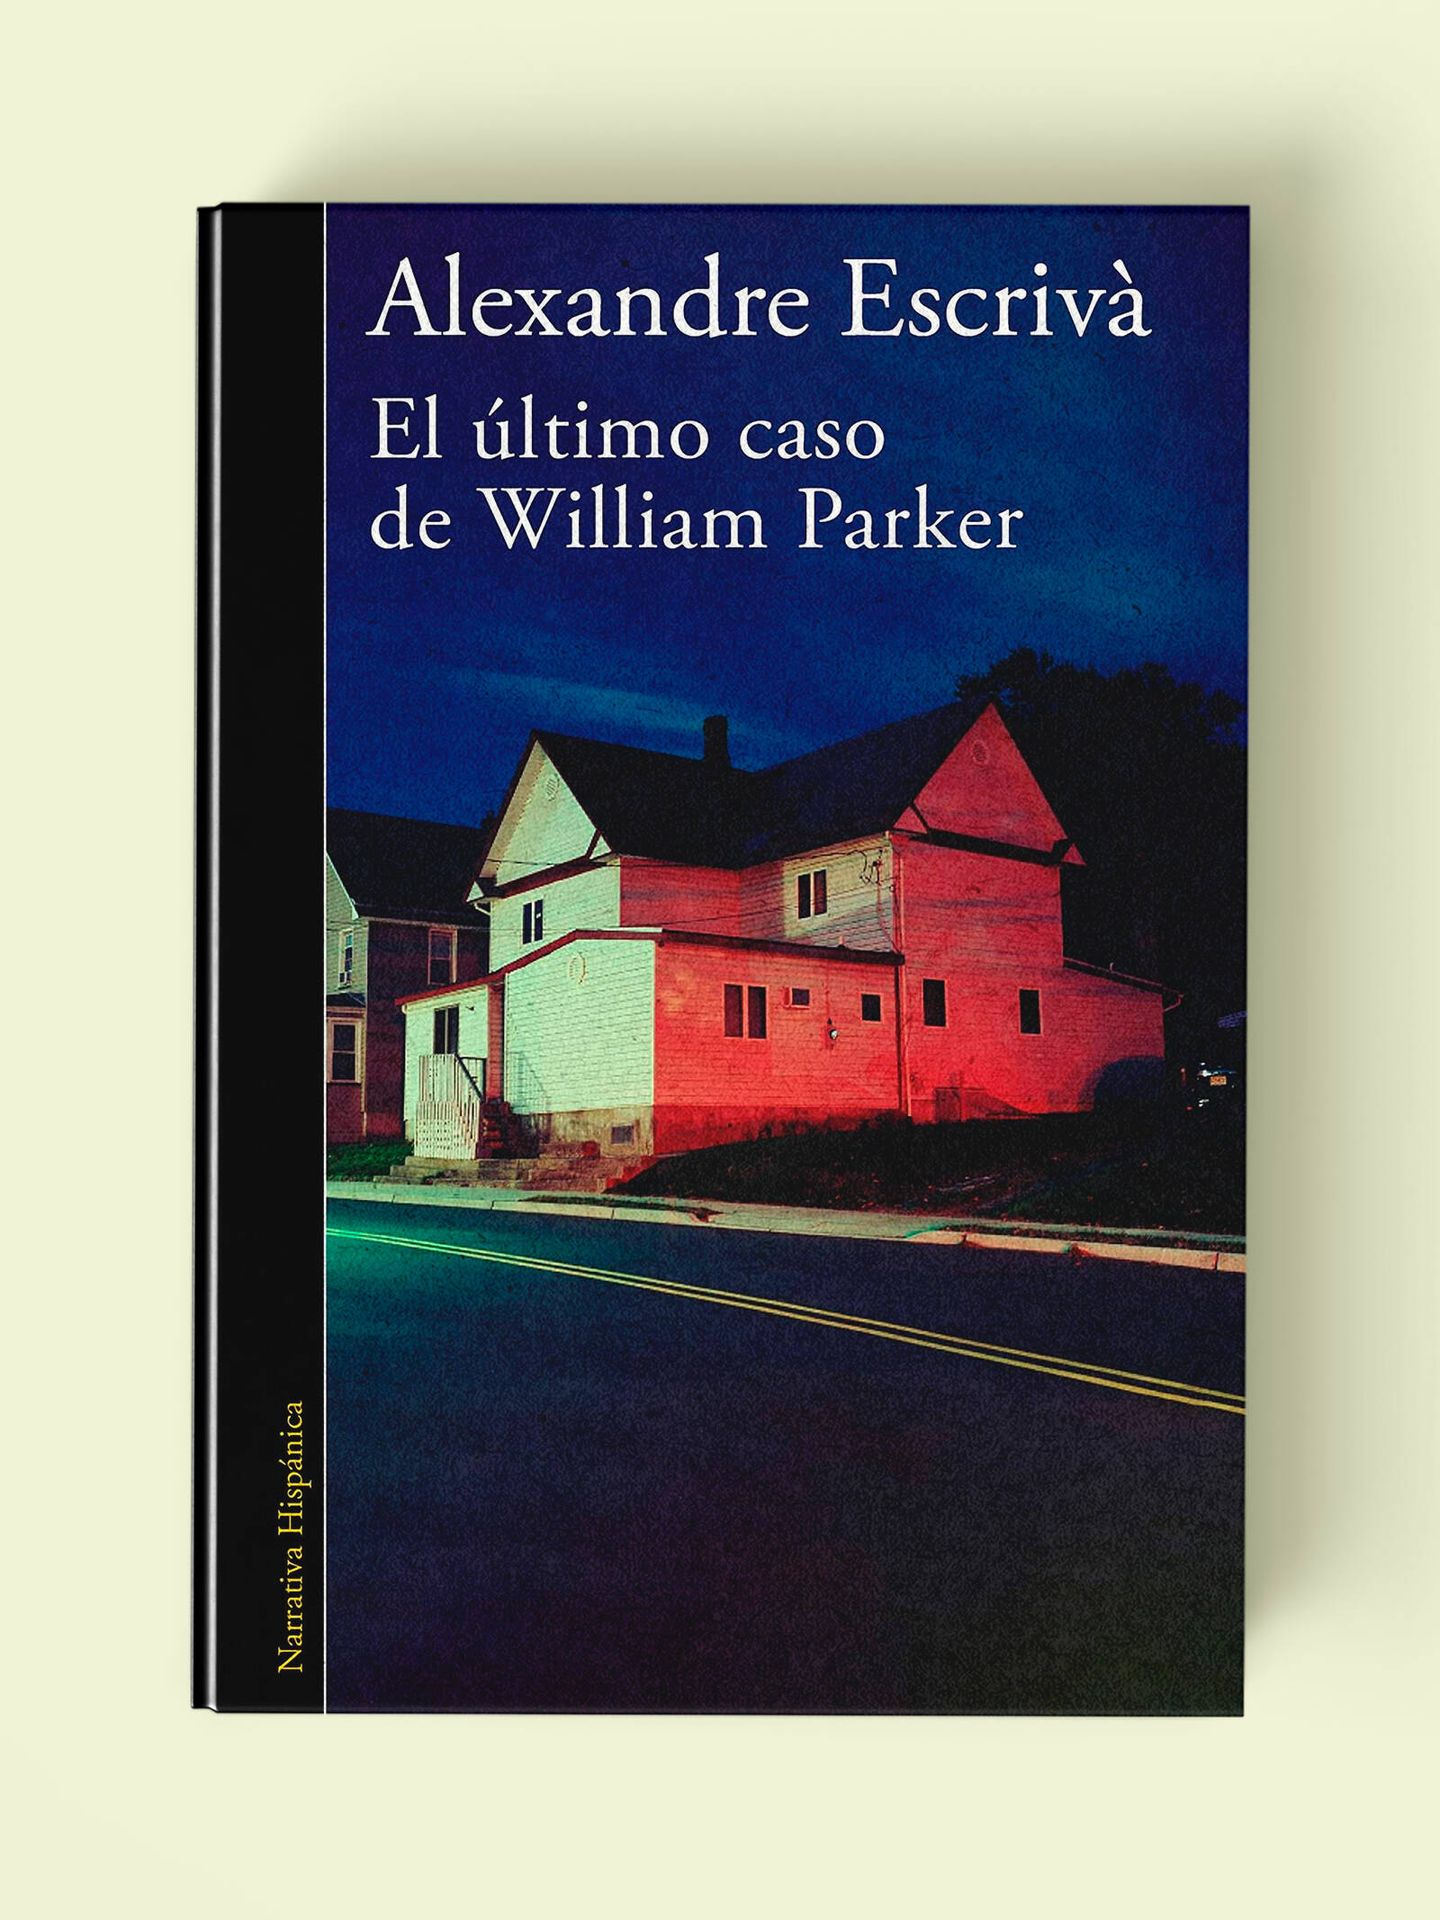 Portada de 'El último caso de William Parker', de Alexandre Escrivà. 